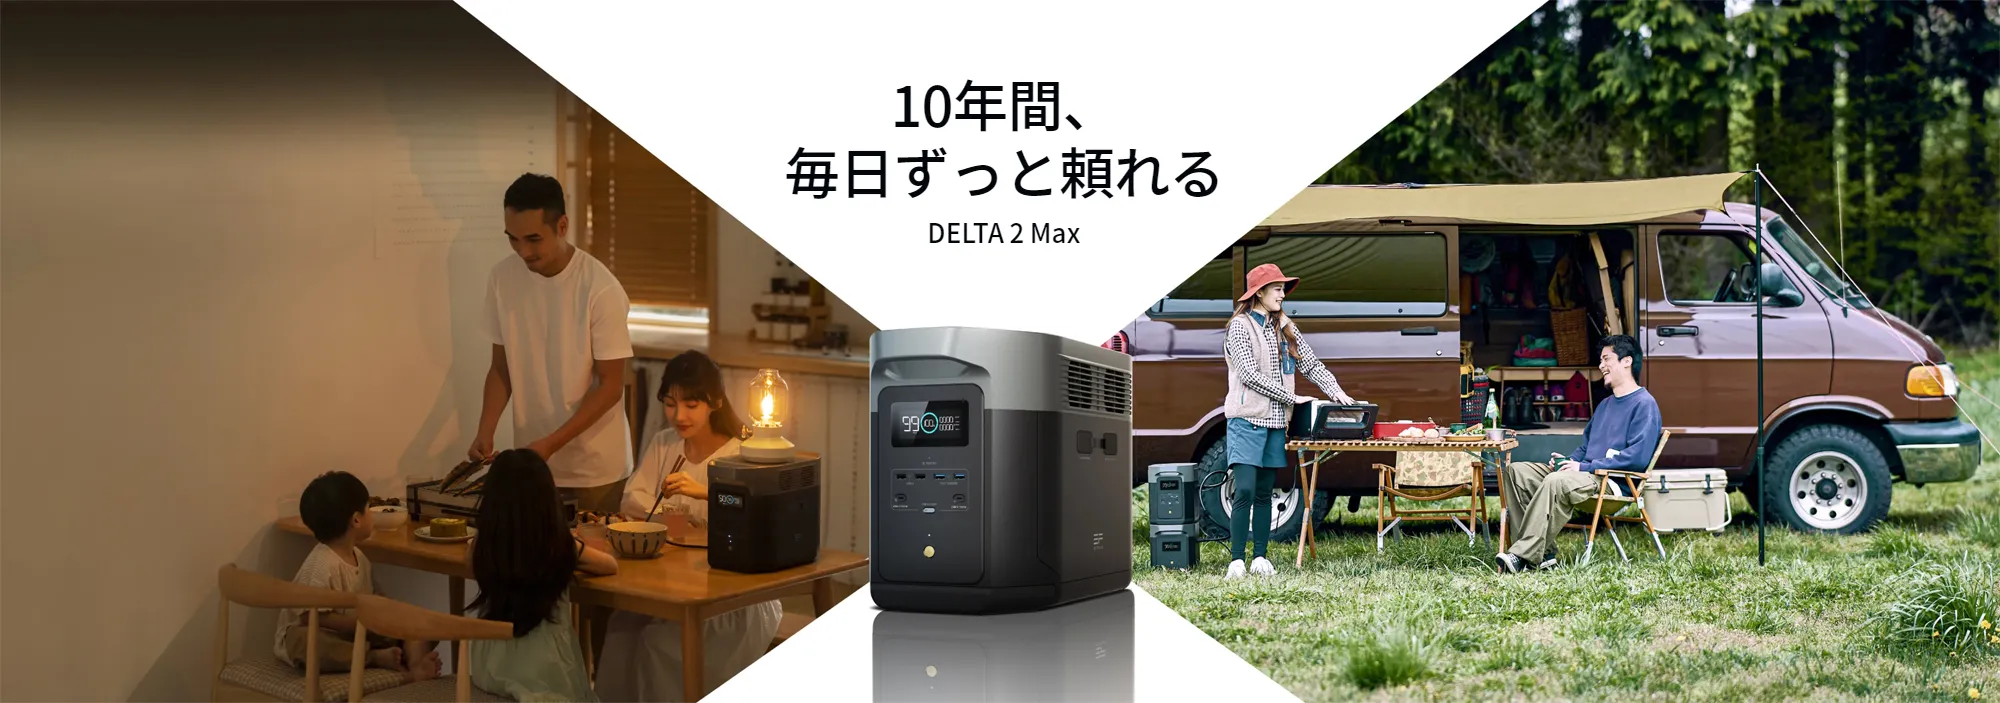 10年間ずっと頼れるポータブル電源 DELTA 2 Max